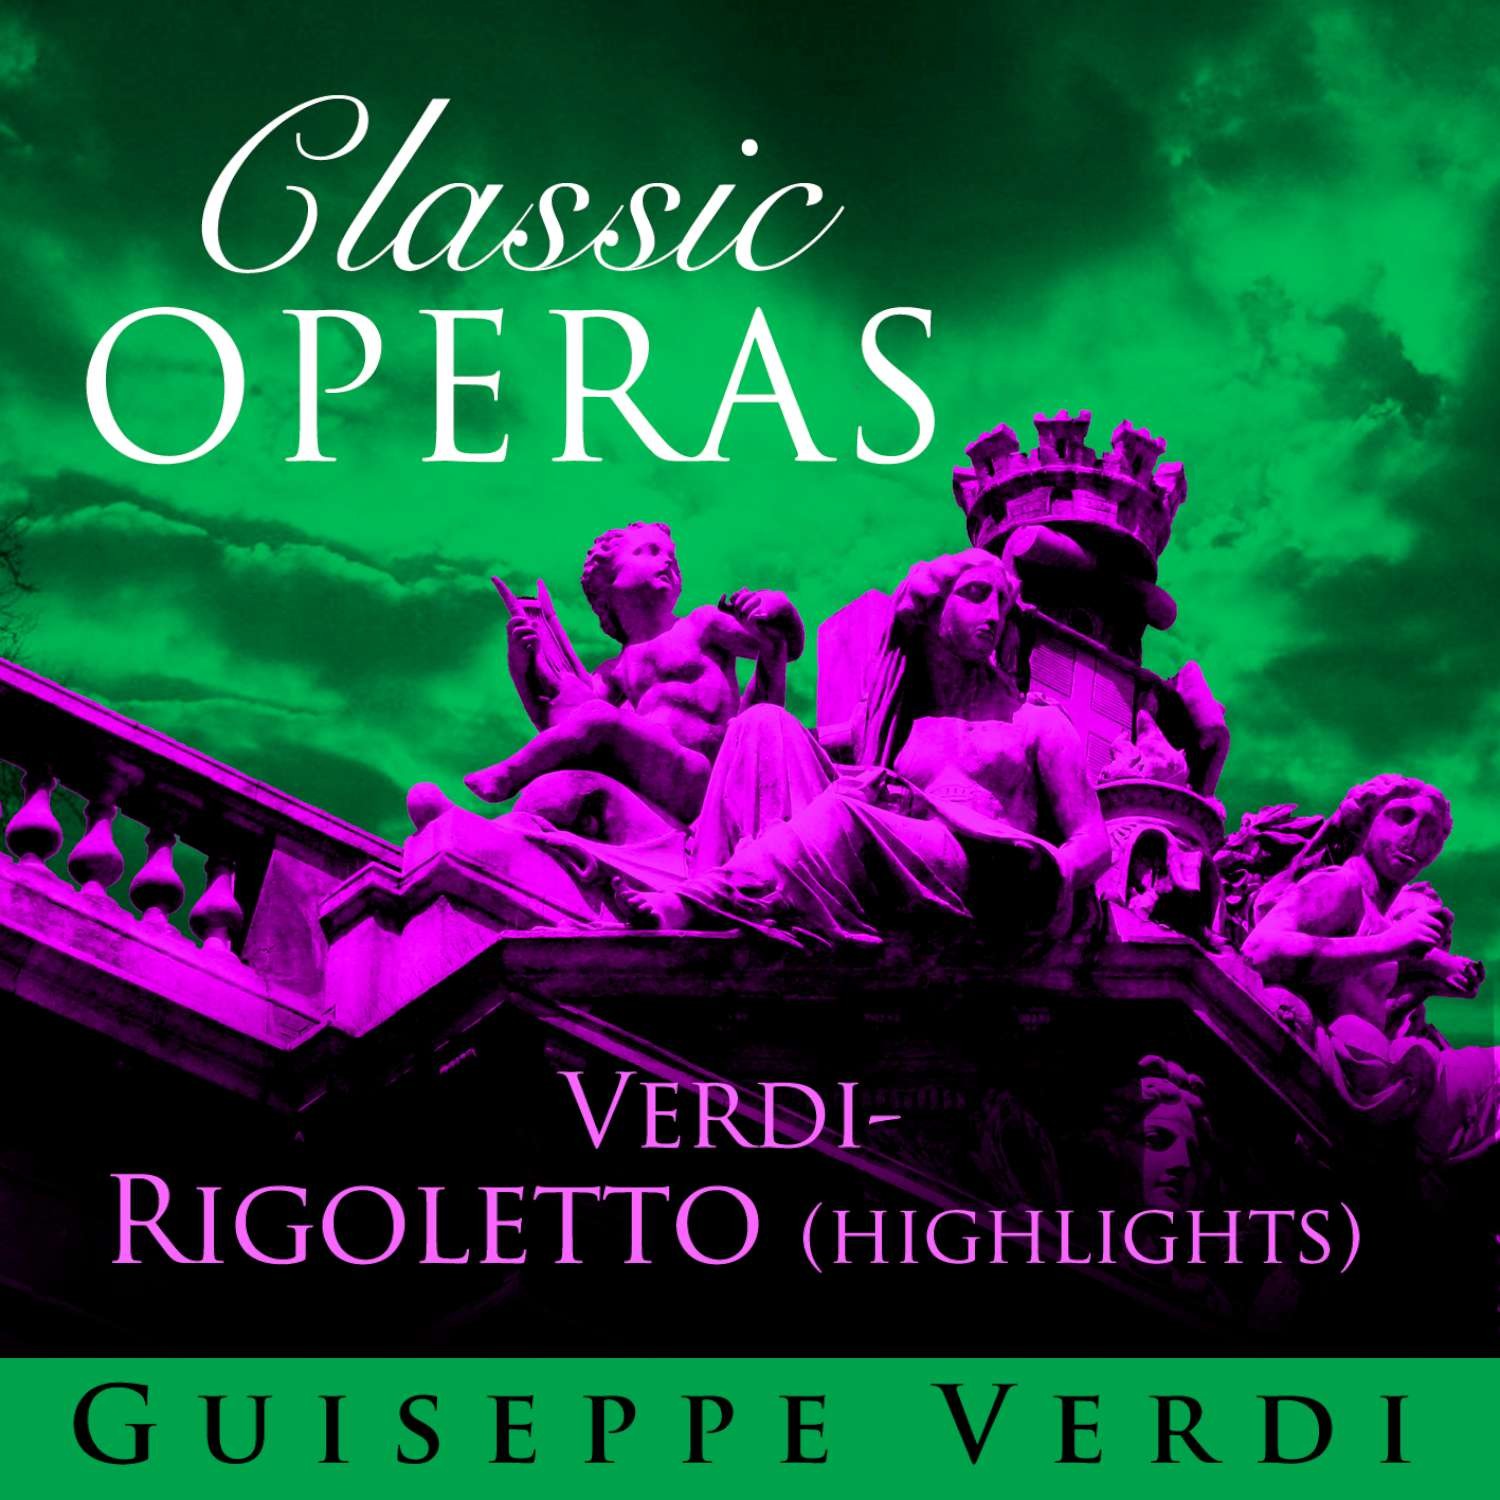 Classic Opera's - Rigoletto Highlights